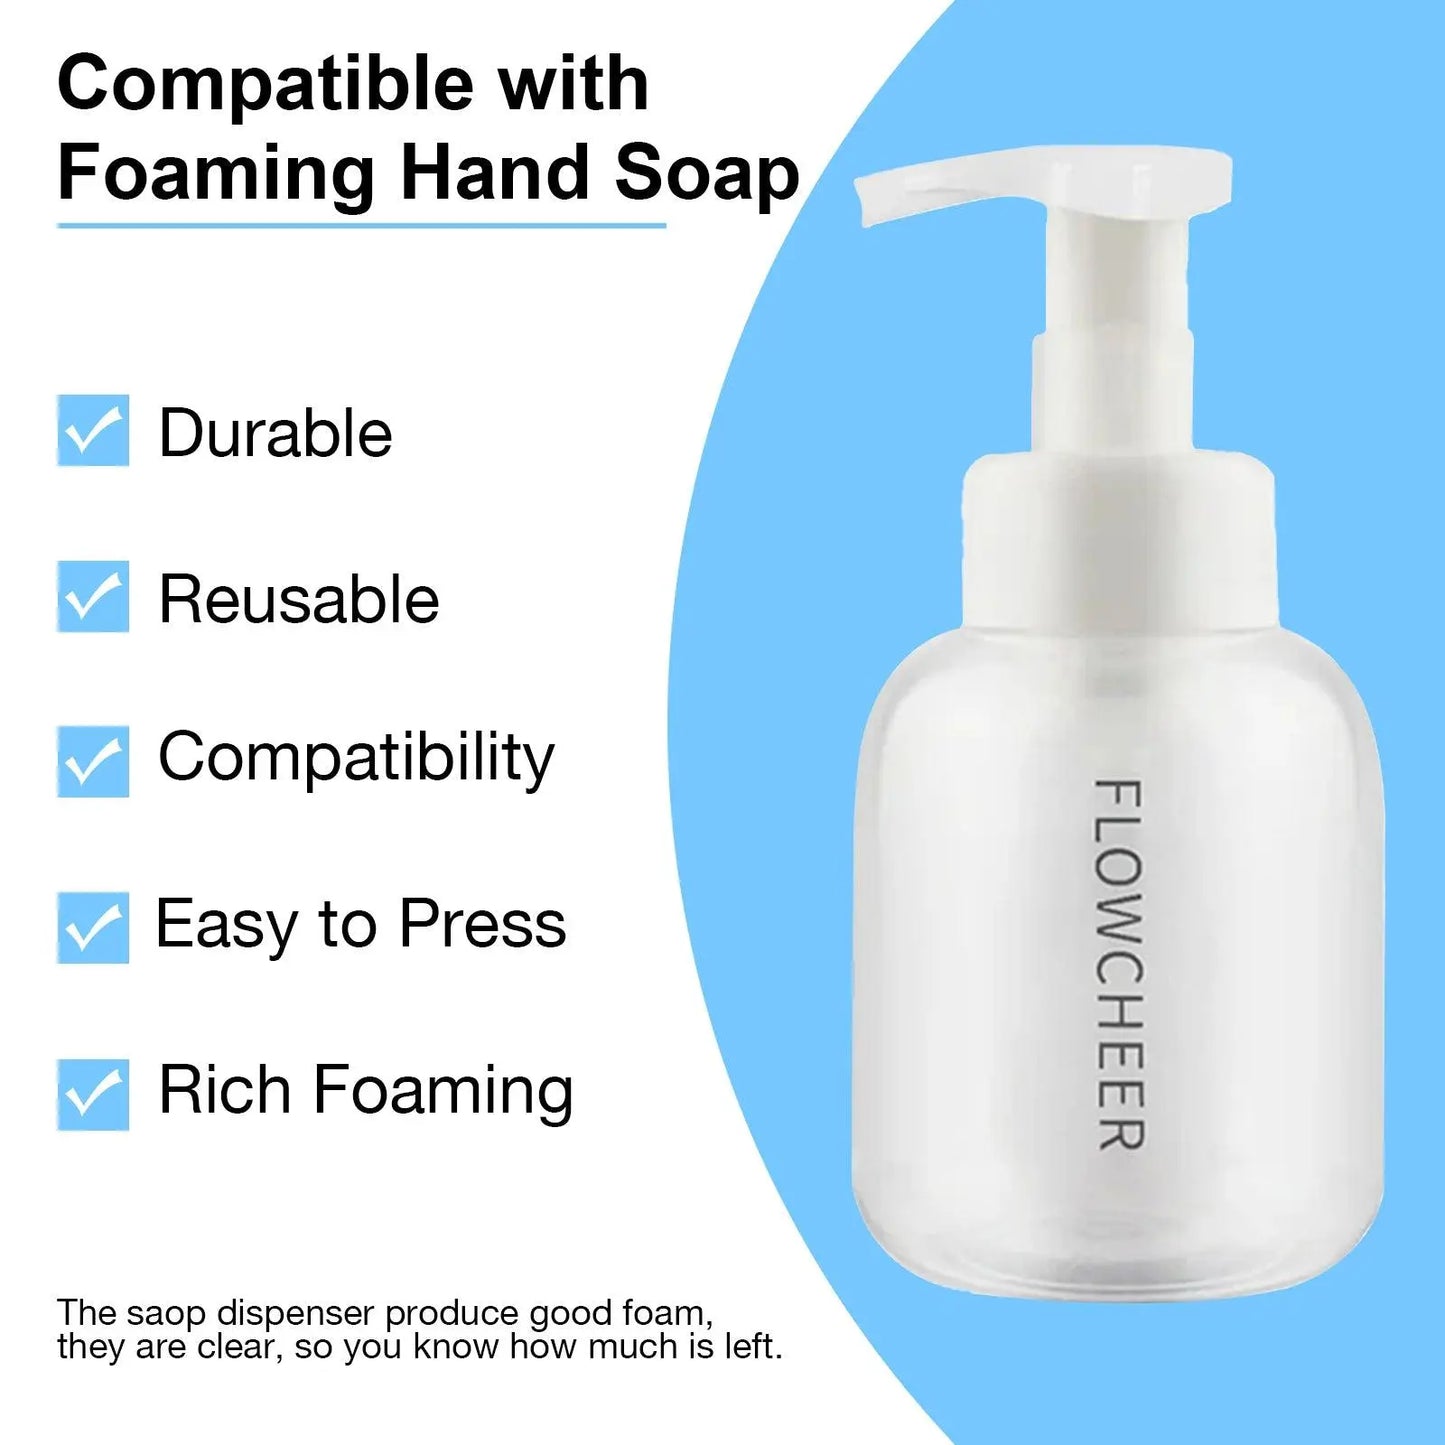 Flowcheer Hand Soap Kit - Flowcheer